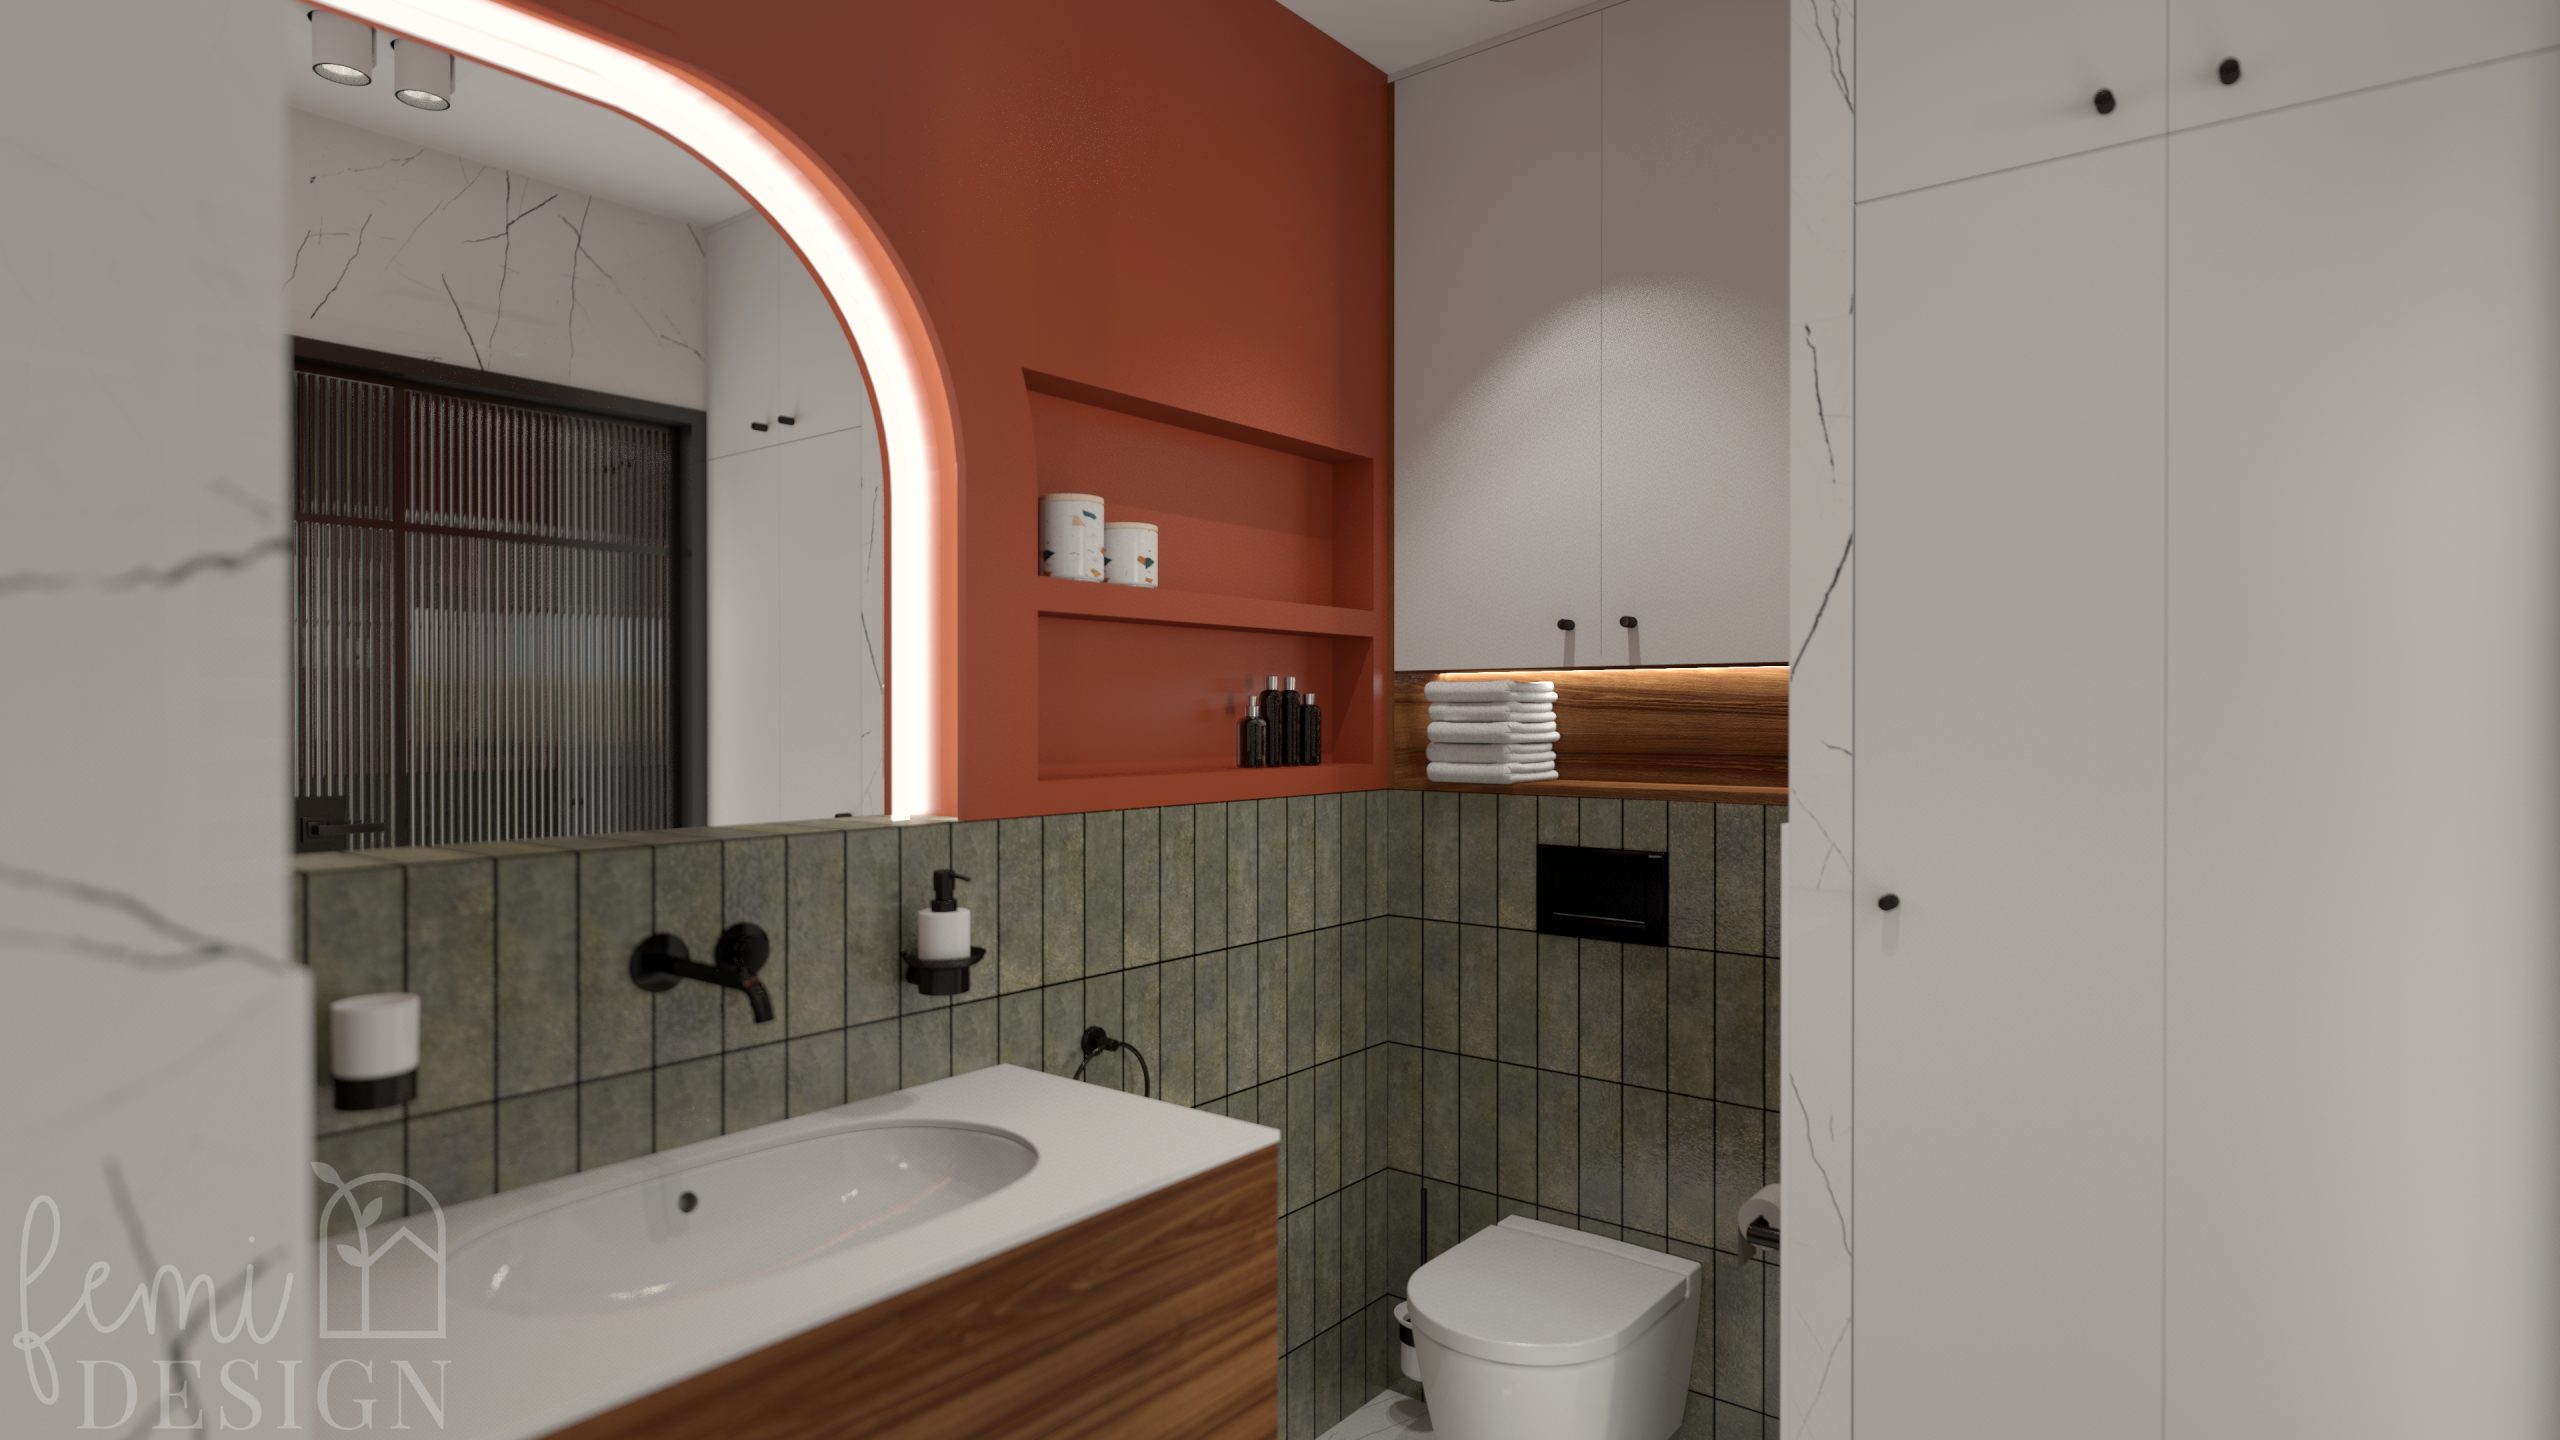 płytki marmurowe, pomarańczowe ściany, zielone płytki łazienkowe, ciemne drewno w łazience, zabudowa pralki i suszarki w łazience